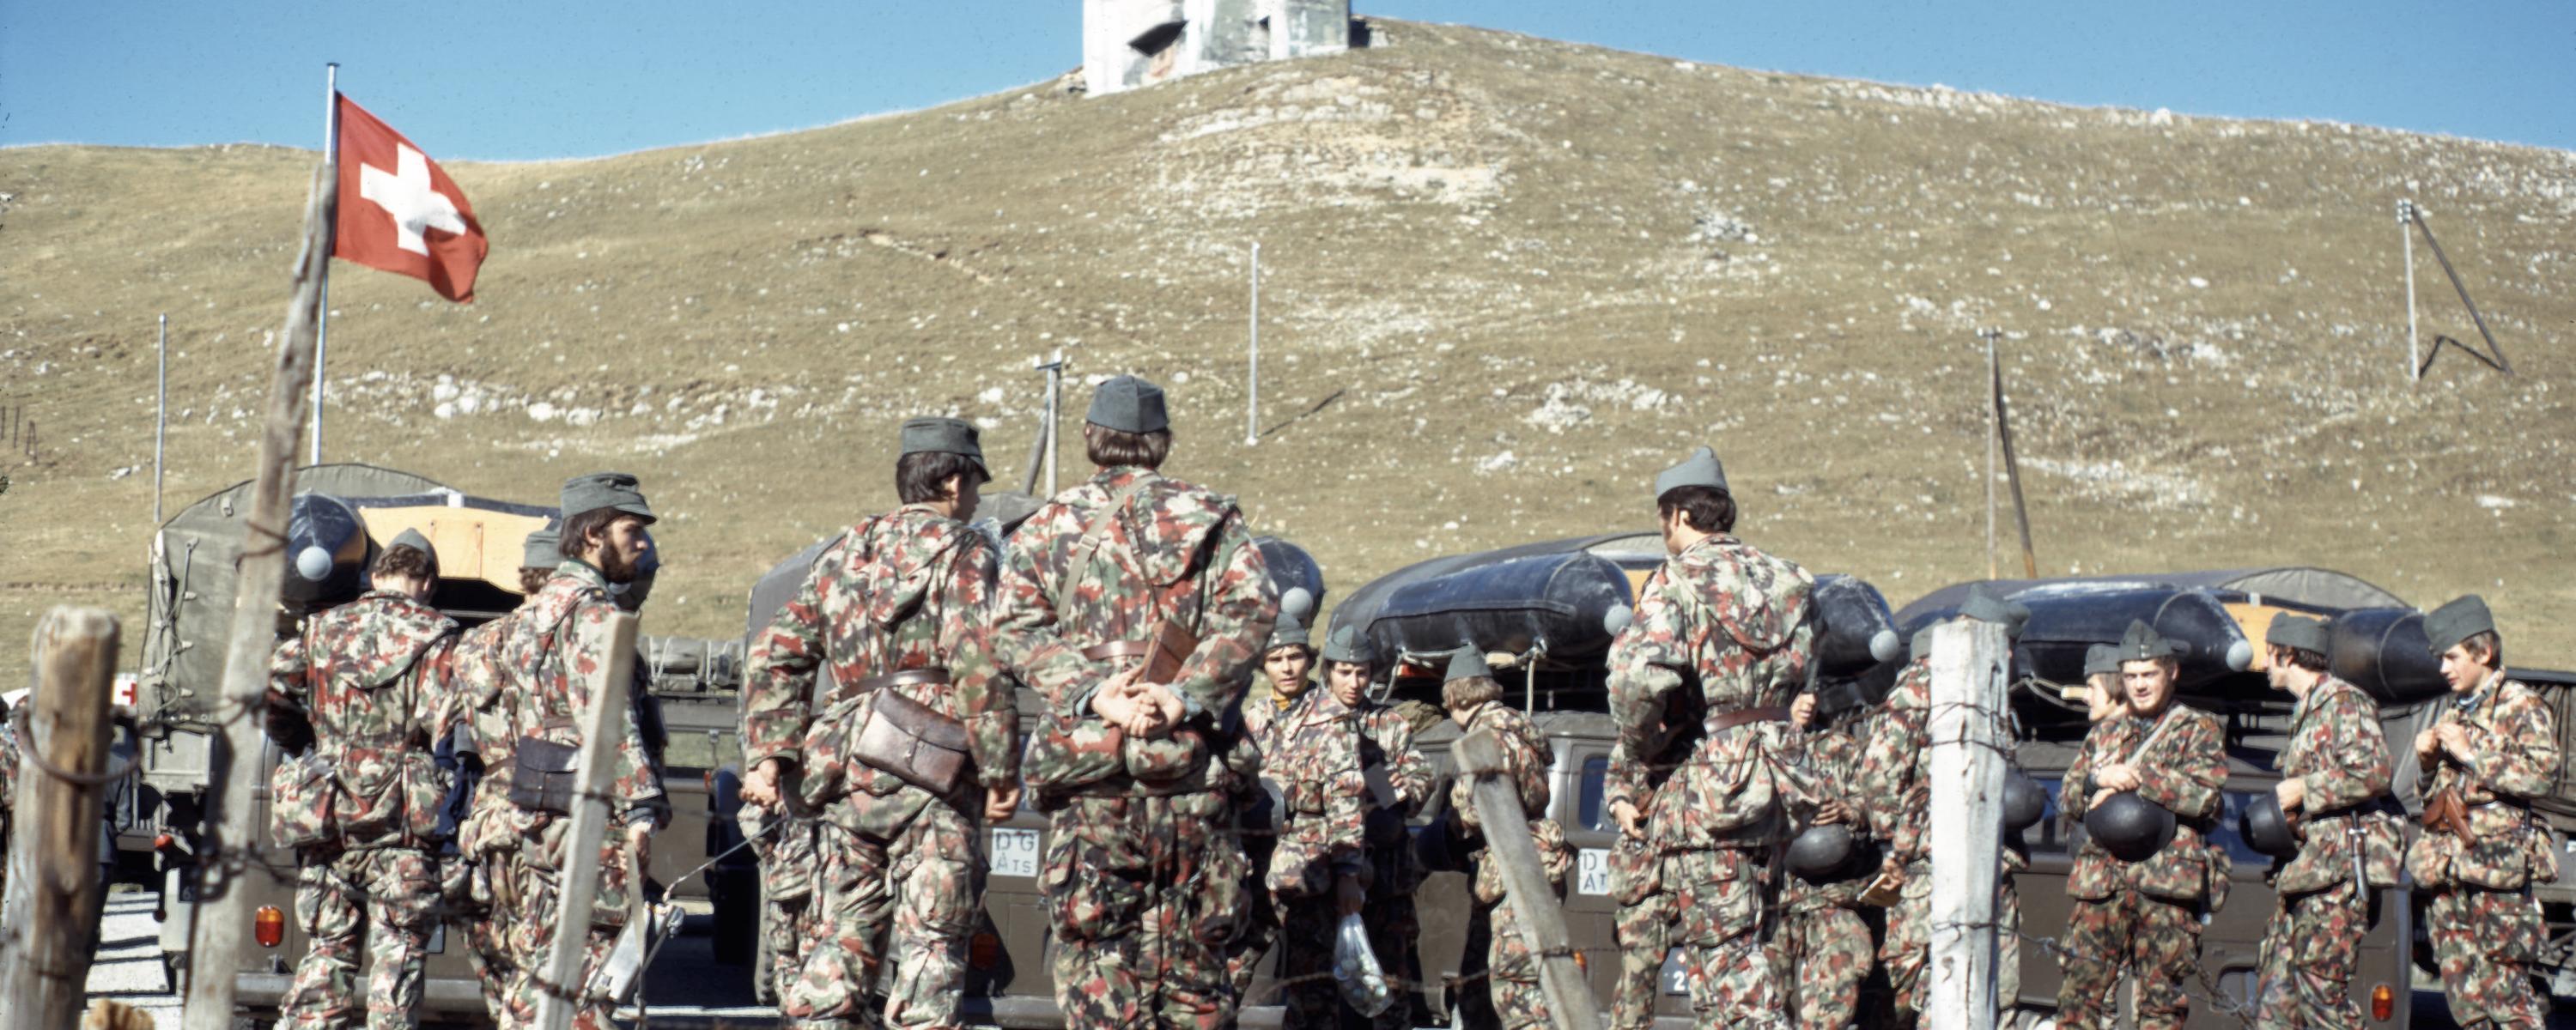 Armeetaucher bei der Vorbereitung zum Bergseetauchen